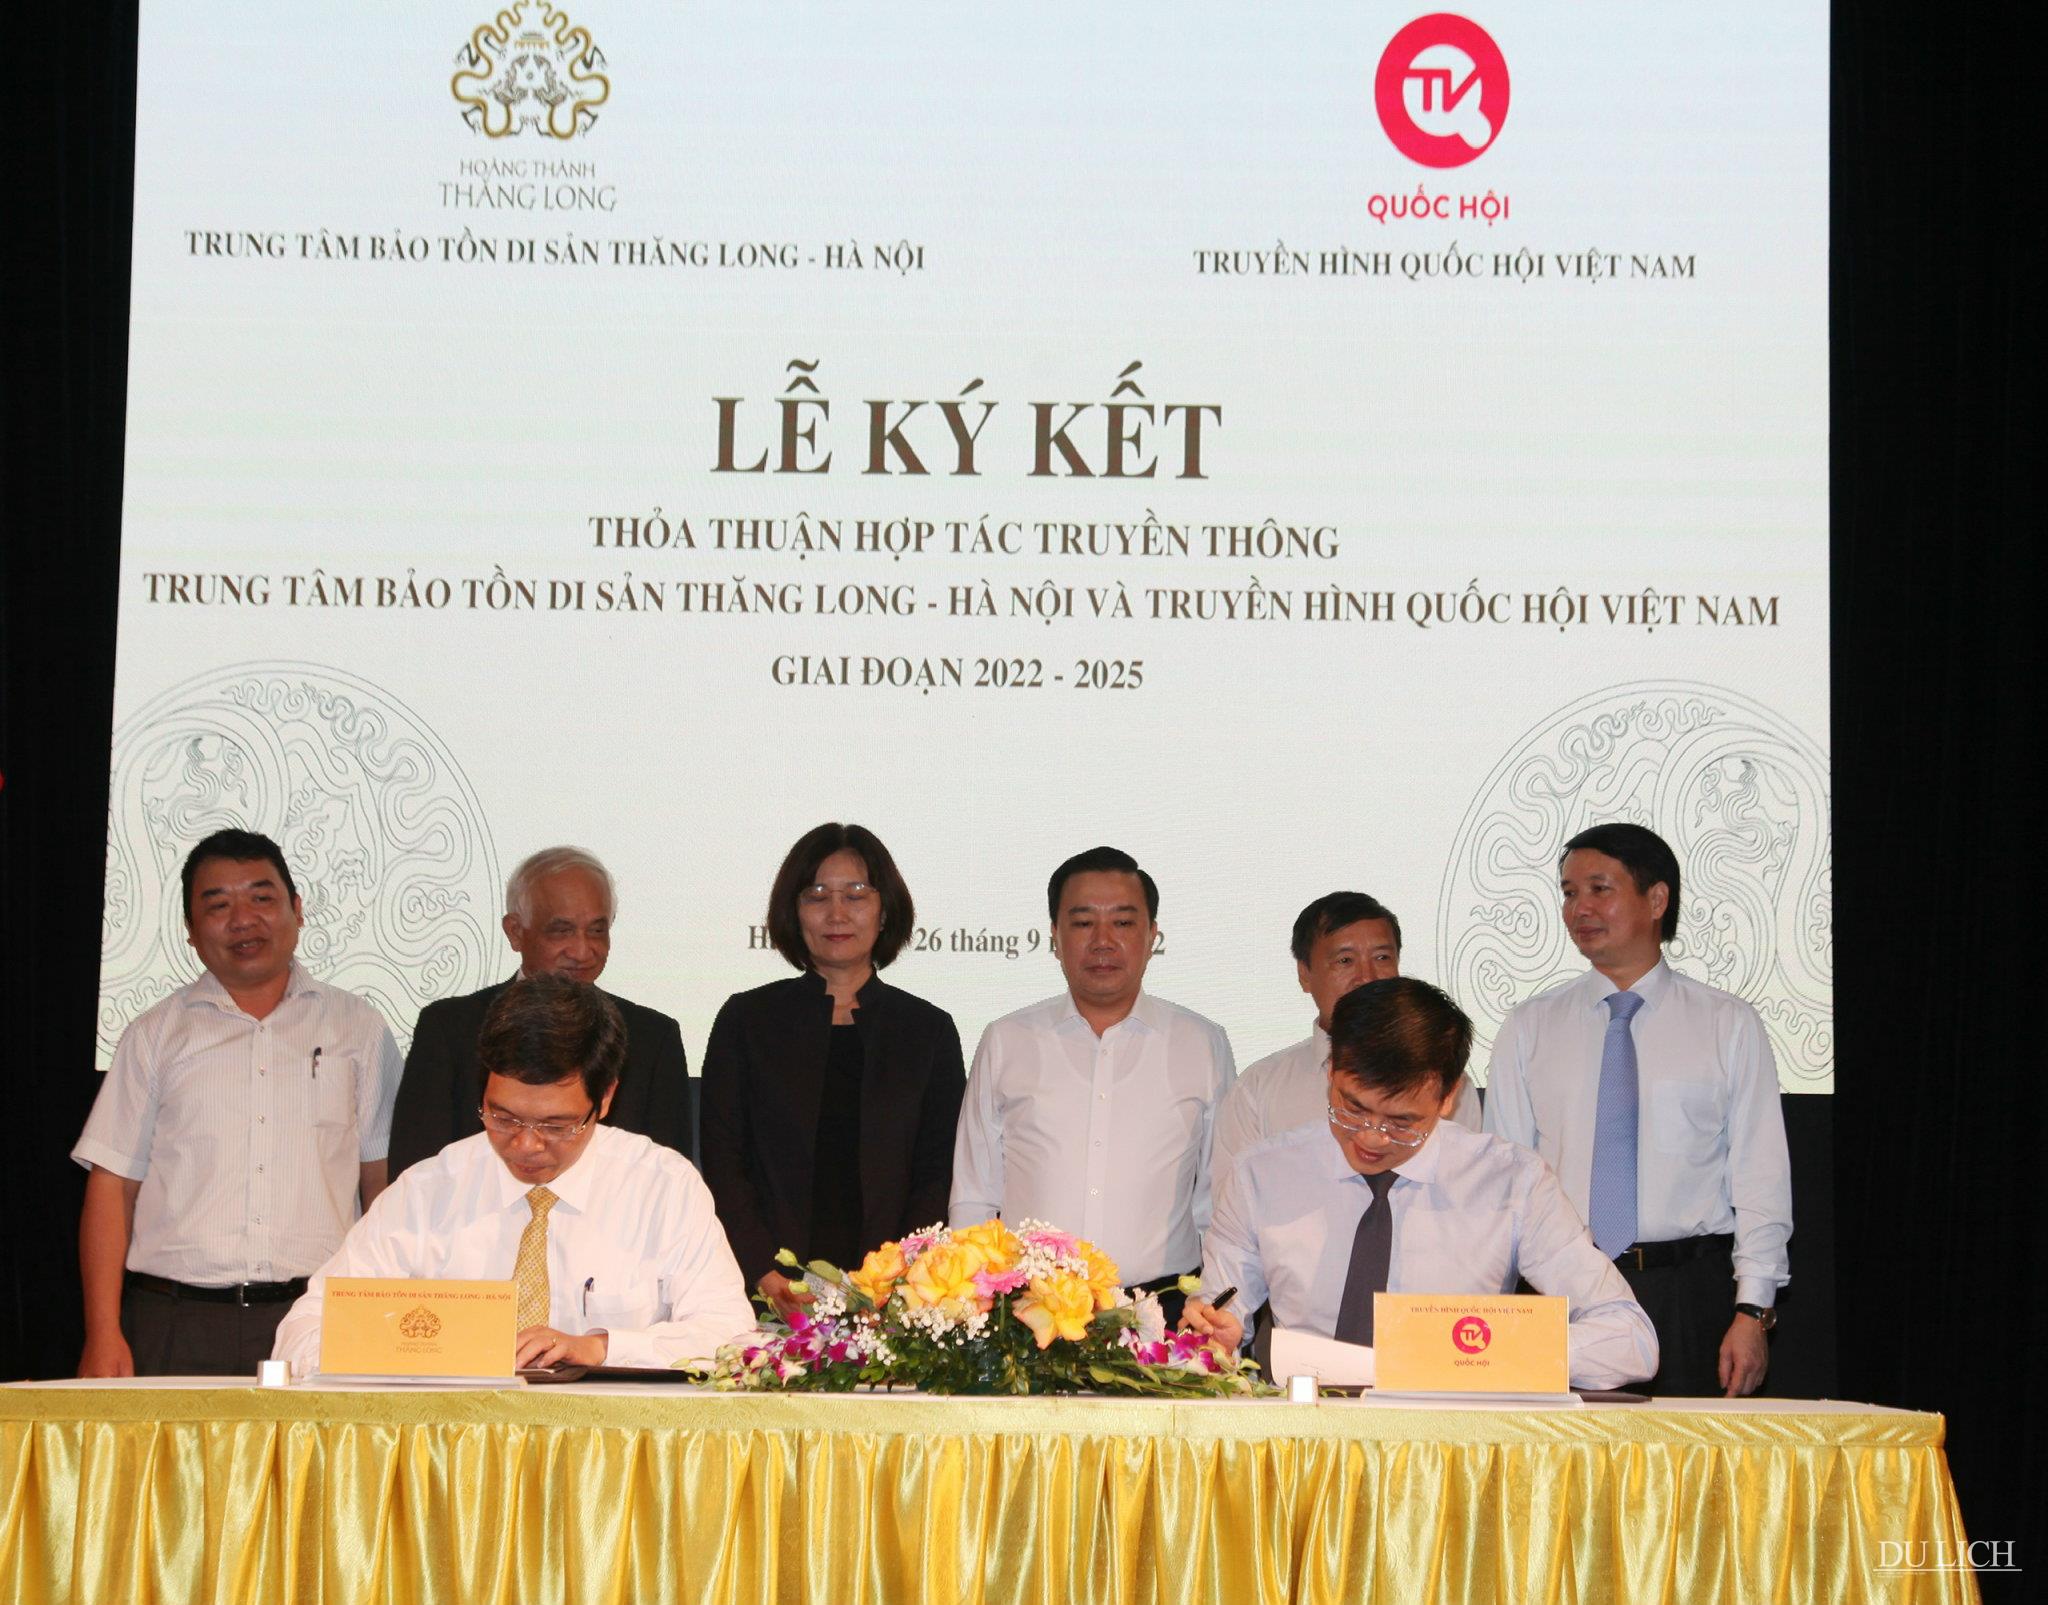 Lễ ký kết thỏa thuận hợp tác truyền thông giữa Trung tâm bảo tồn di sản Thăng Long - Hà Nội và Truyền hình Quốc hội giai đoạn 2022 - 2025